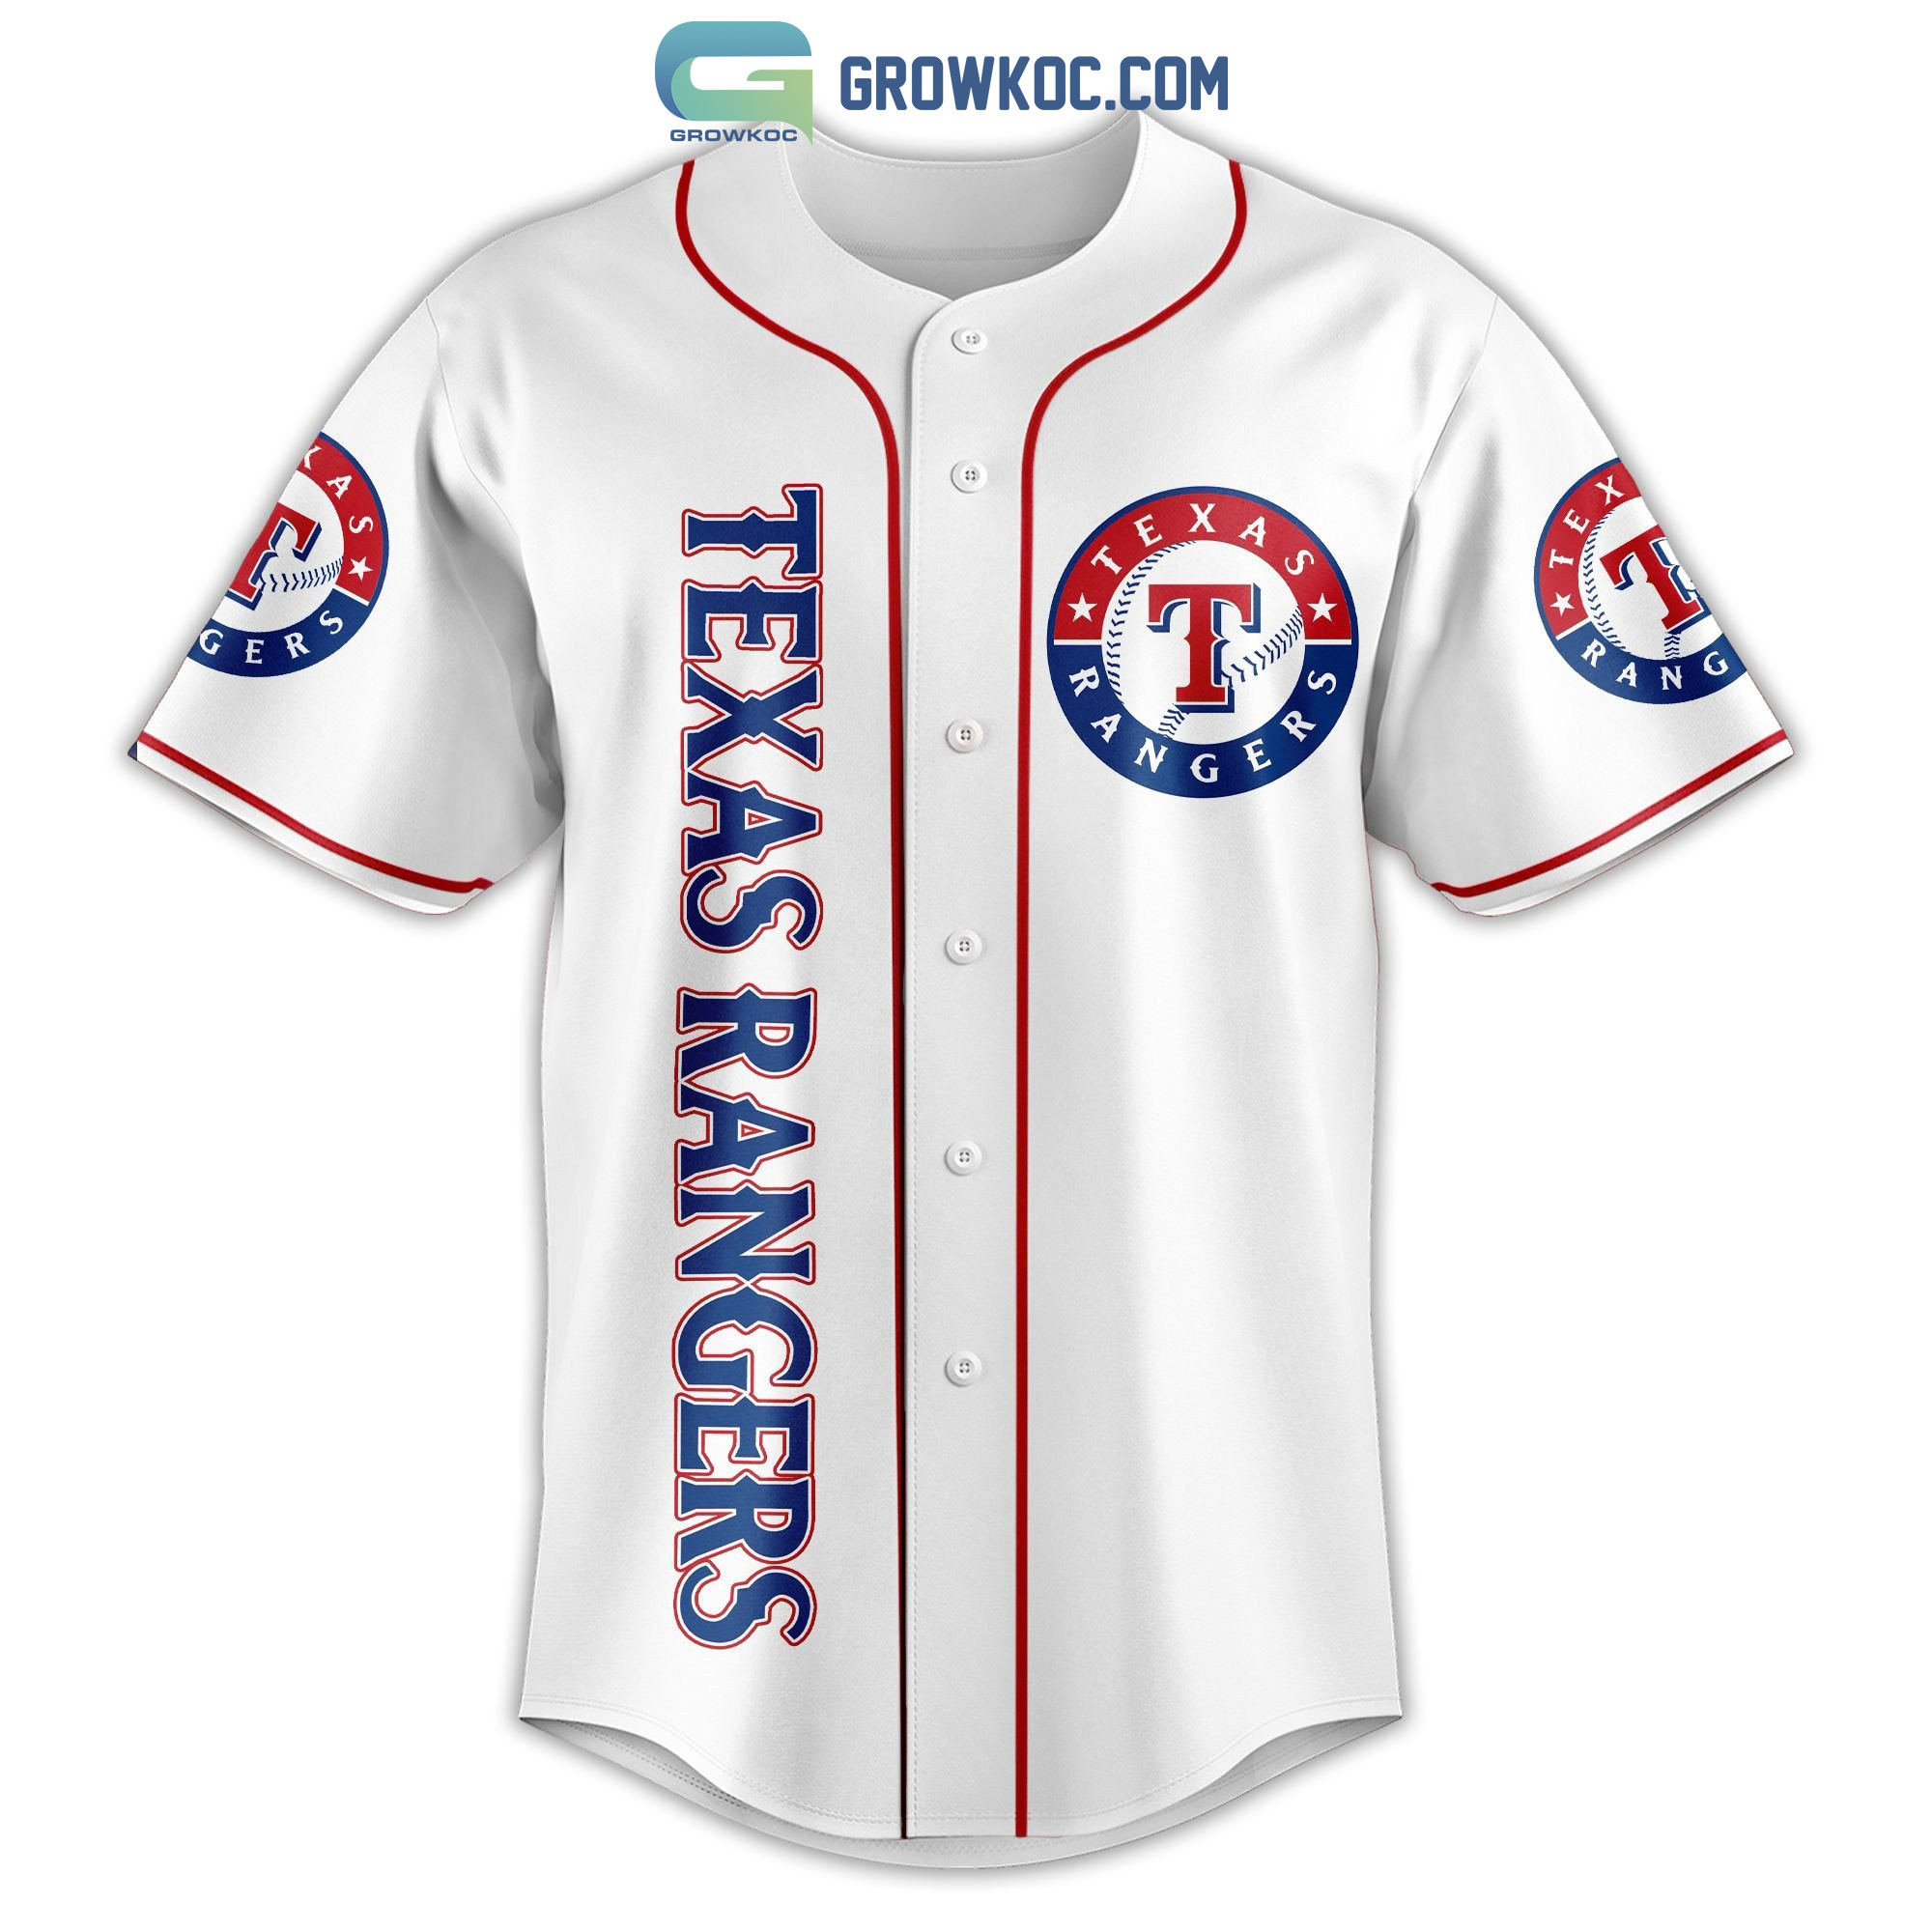 Texas Rangers Shirt, Texas Baseball Tshirt, Texas Est 1835 Tshirt